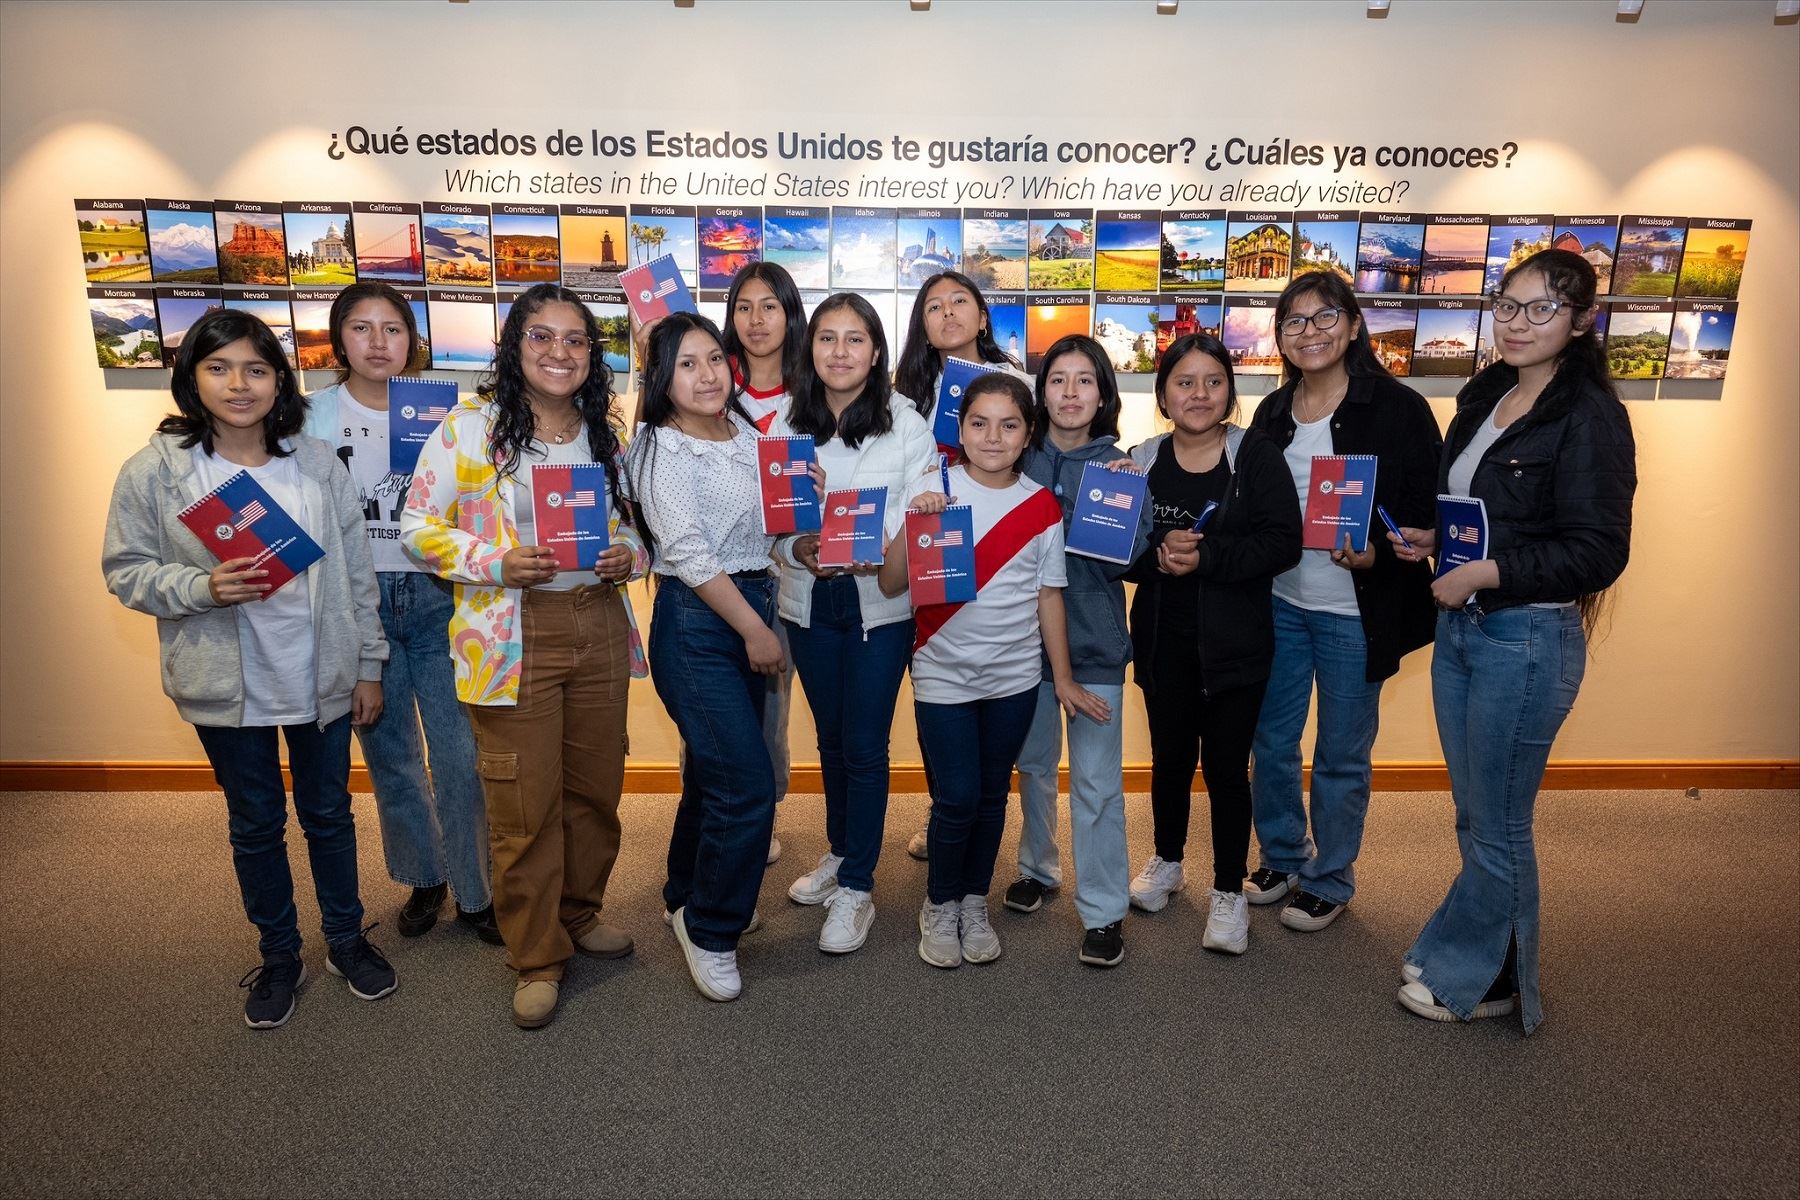 Las tripulantes peruanas seleccionadas son de Arequipa, Cajamarca, Cusco, Lima, Huancayo, Apurímac, Trujillo, Puno y el Callao. En esta segunda edición del programa Ella es Astronauta postularon 1,436 niñas de todo el país.